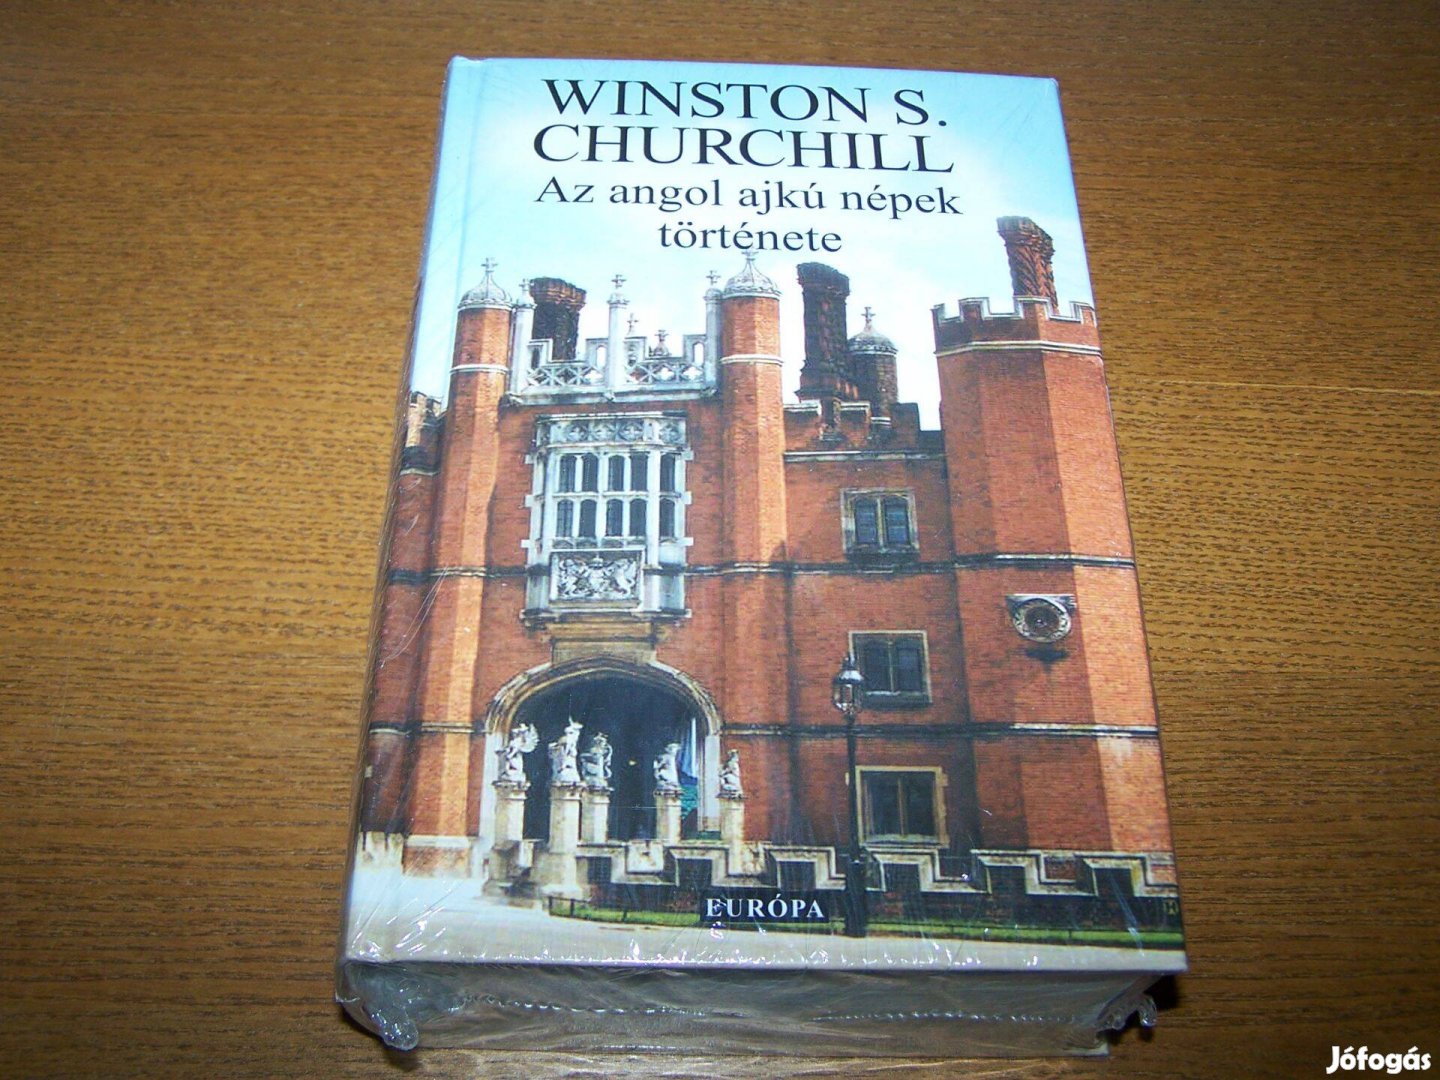 Az angol ajkú népek története c. könyv - Winston S. Churchill